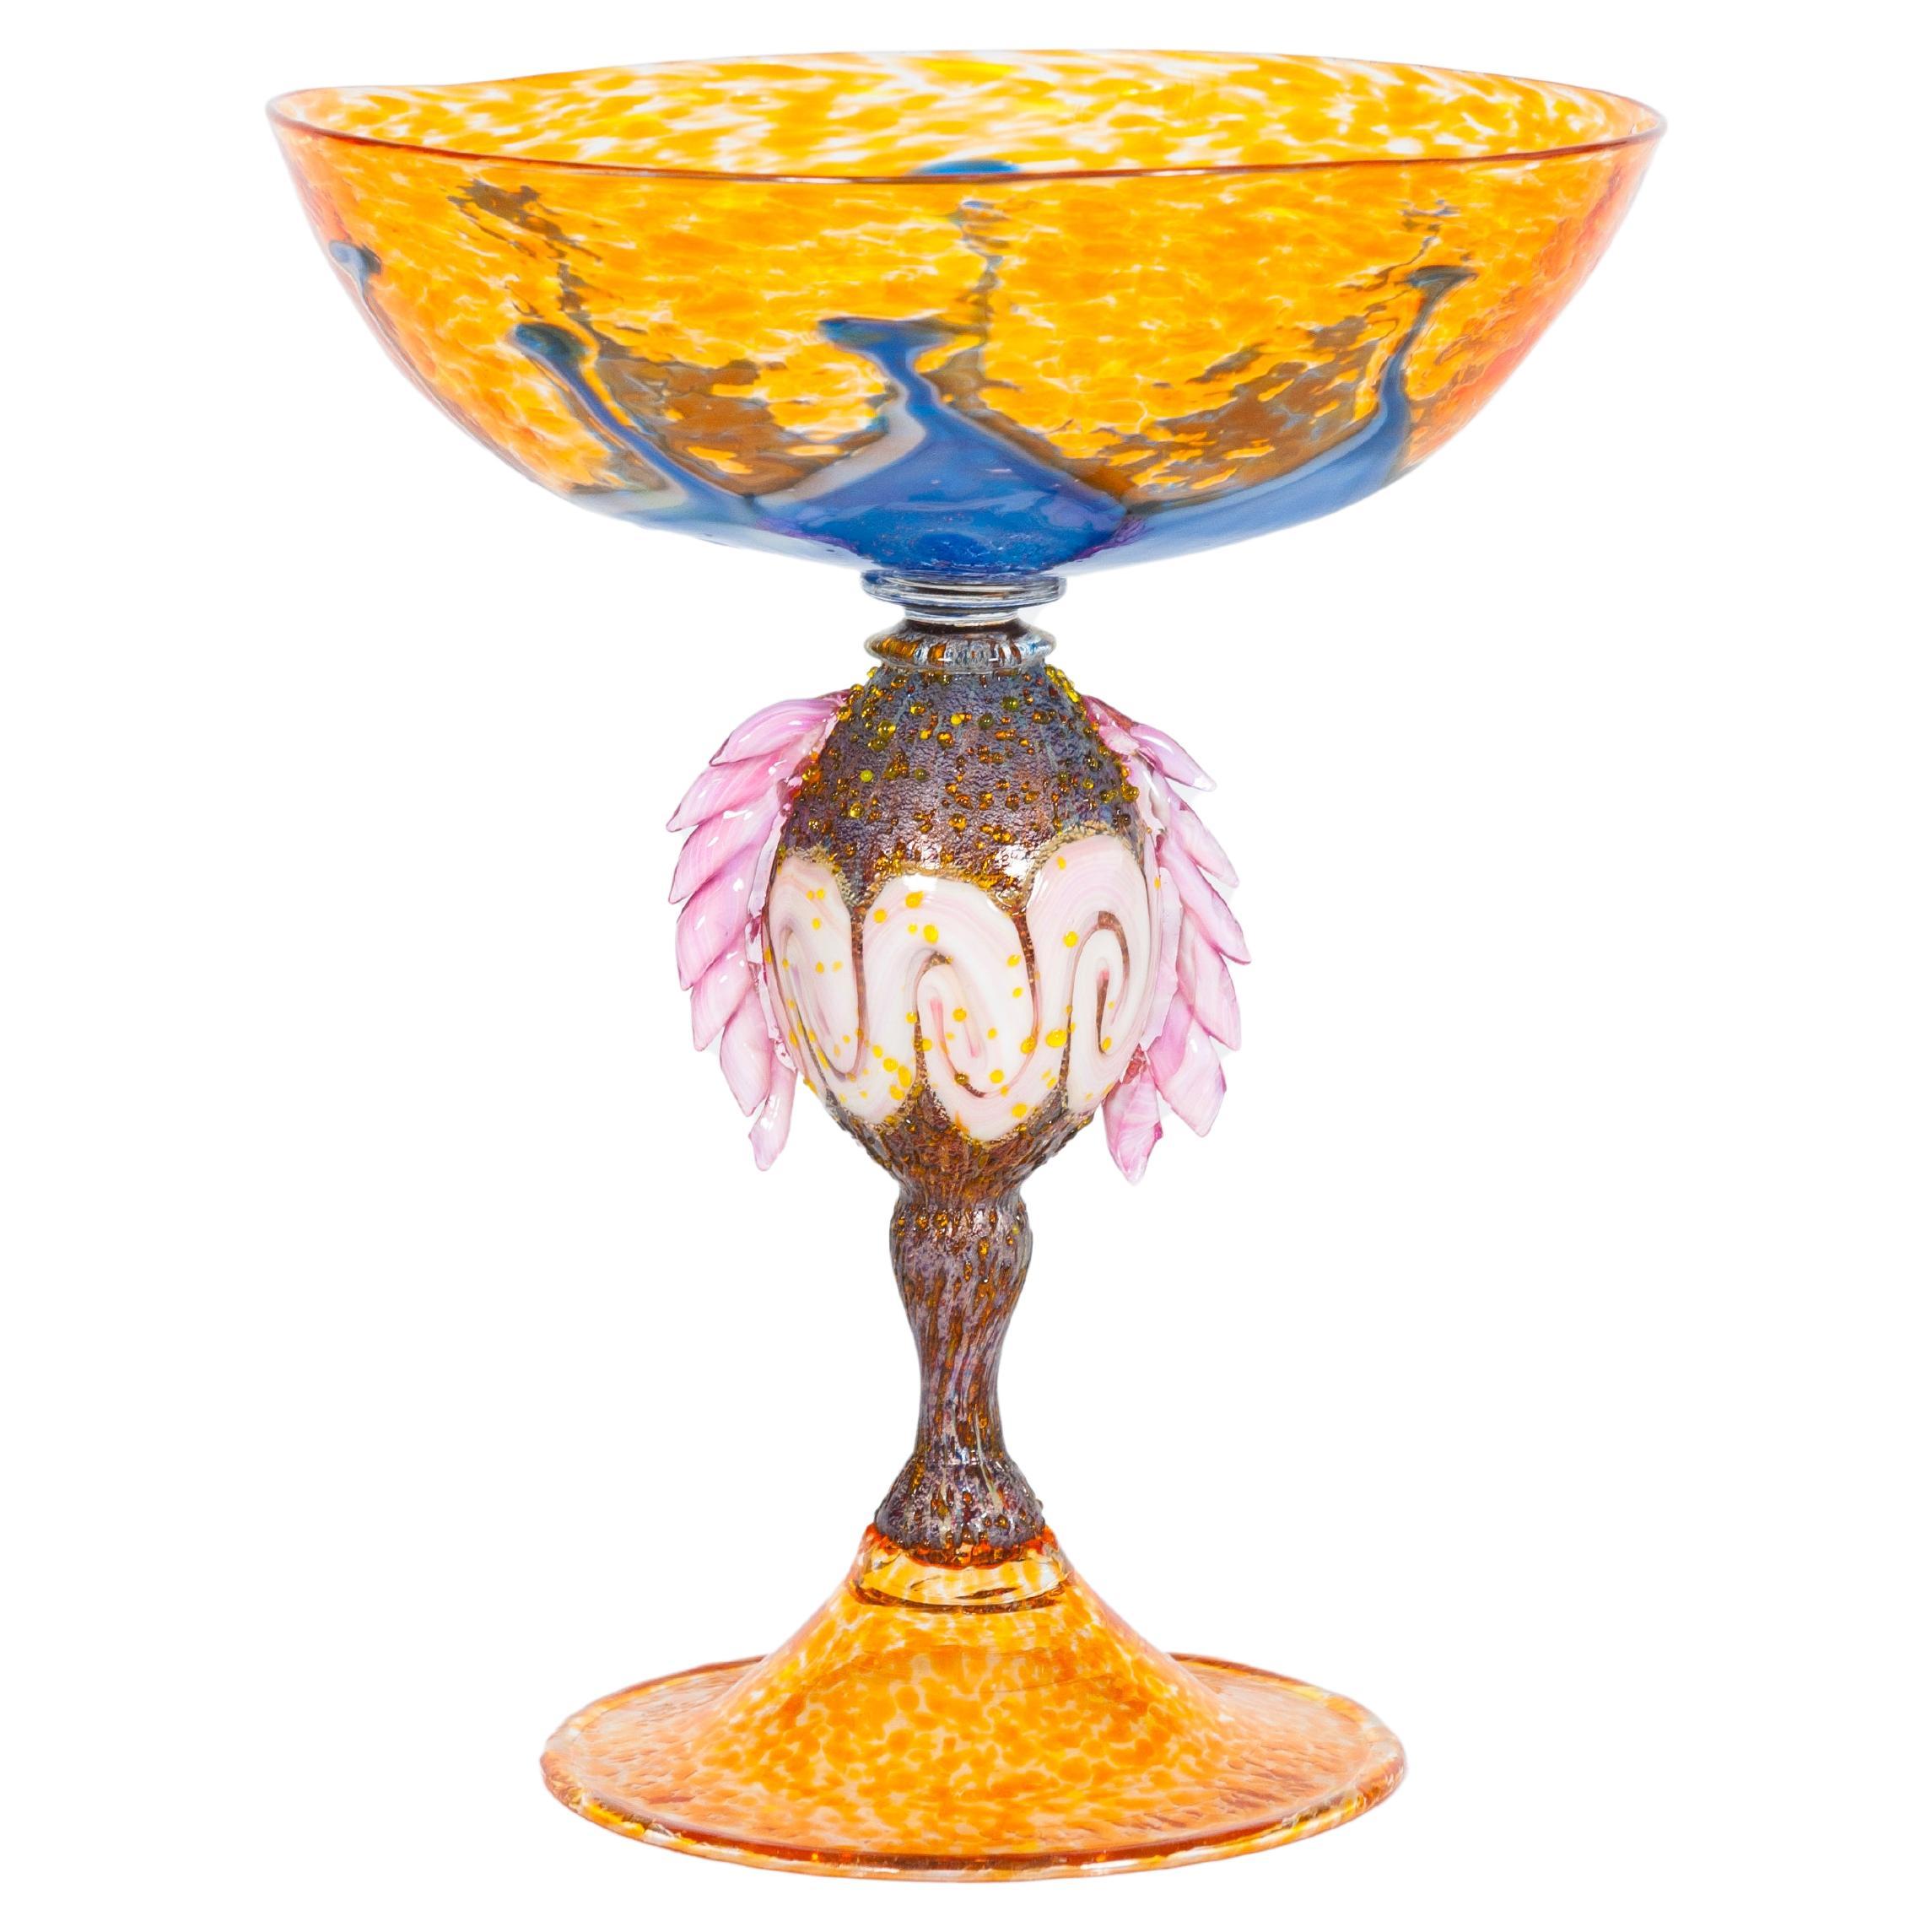 Gobelet vénitien italien en verre de Murano multicolore avec Morise des années 1980, fabriqué à la main